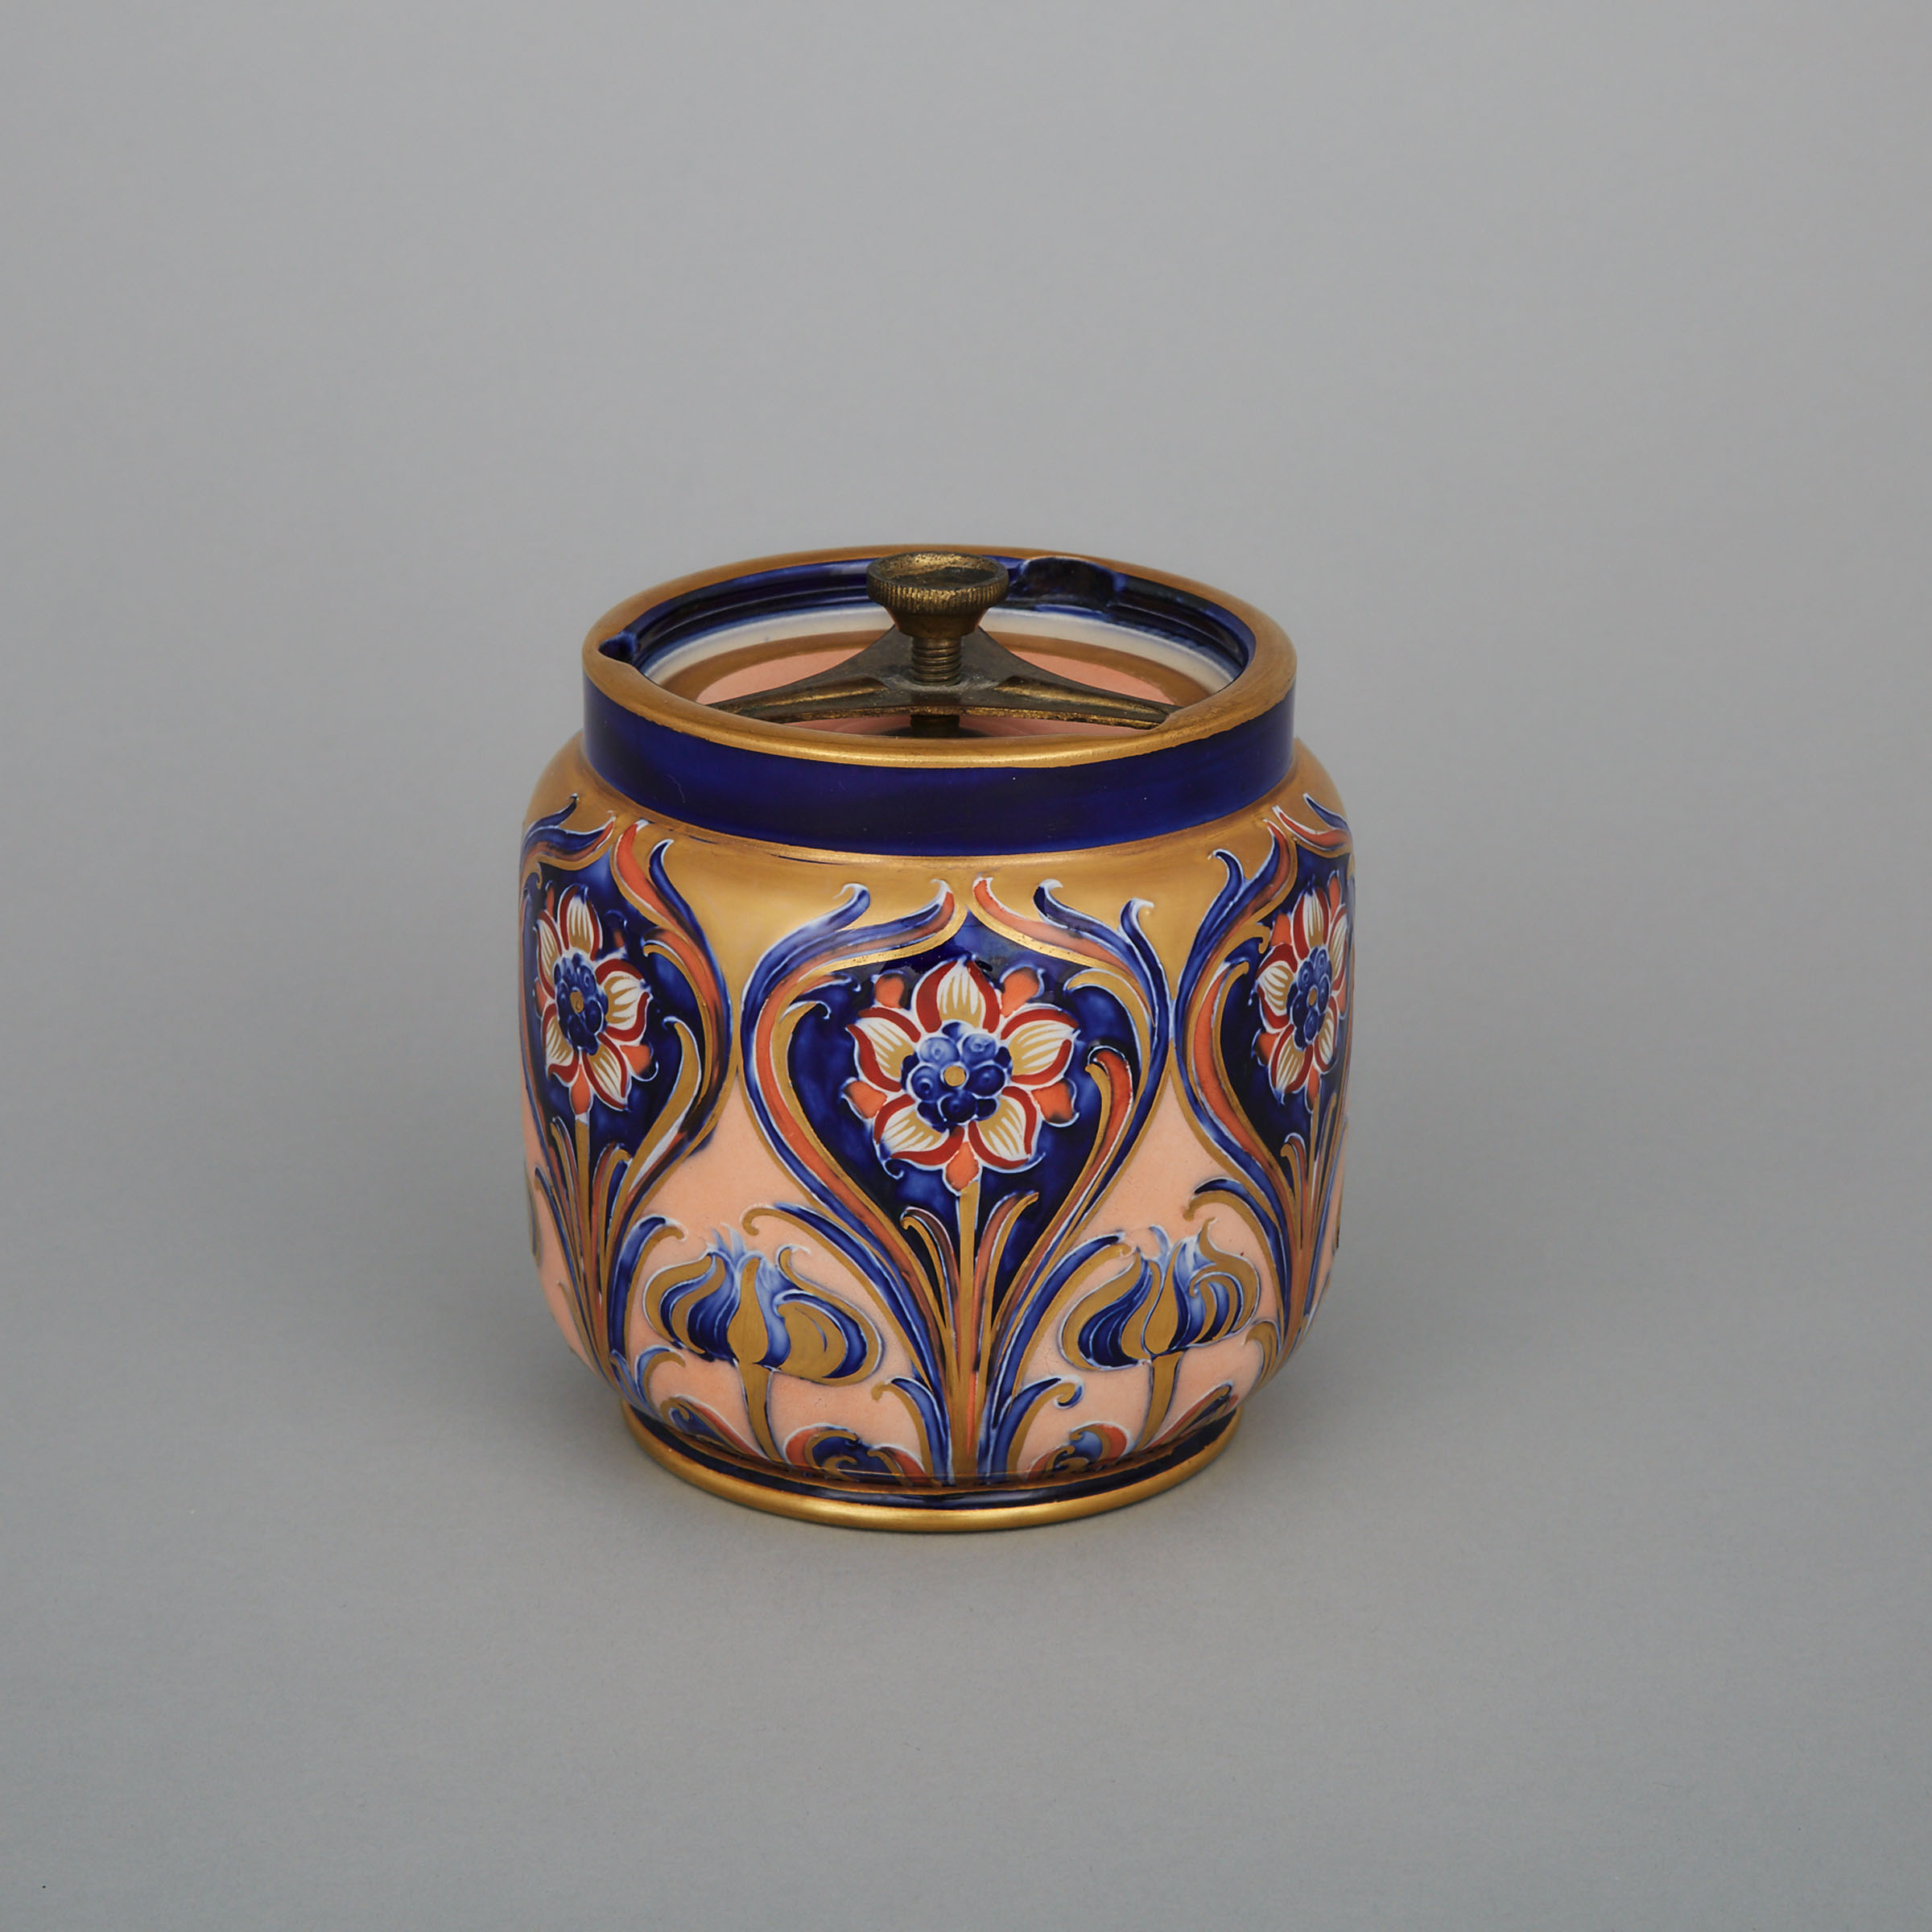 Macintyre Moorcroft Alhambra Covered Tobacco Jar, c.1903